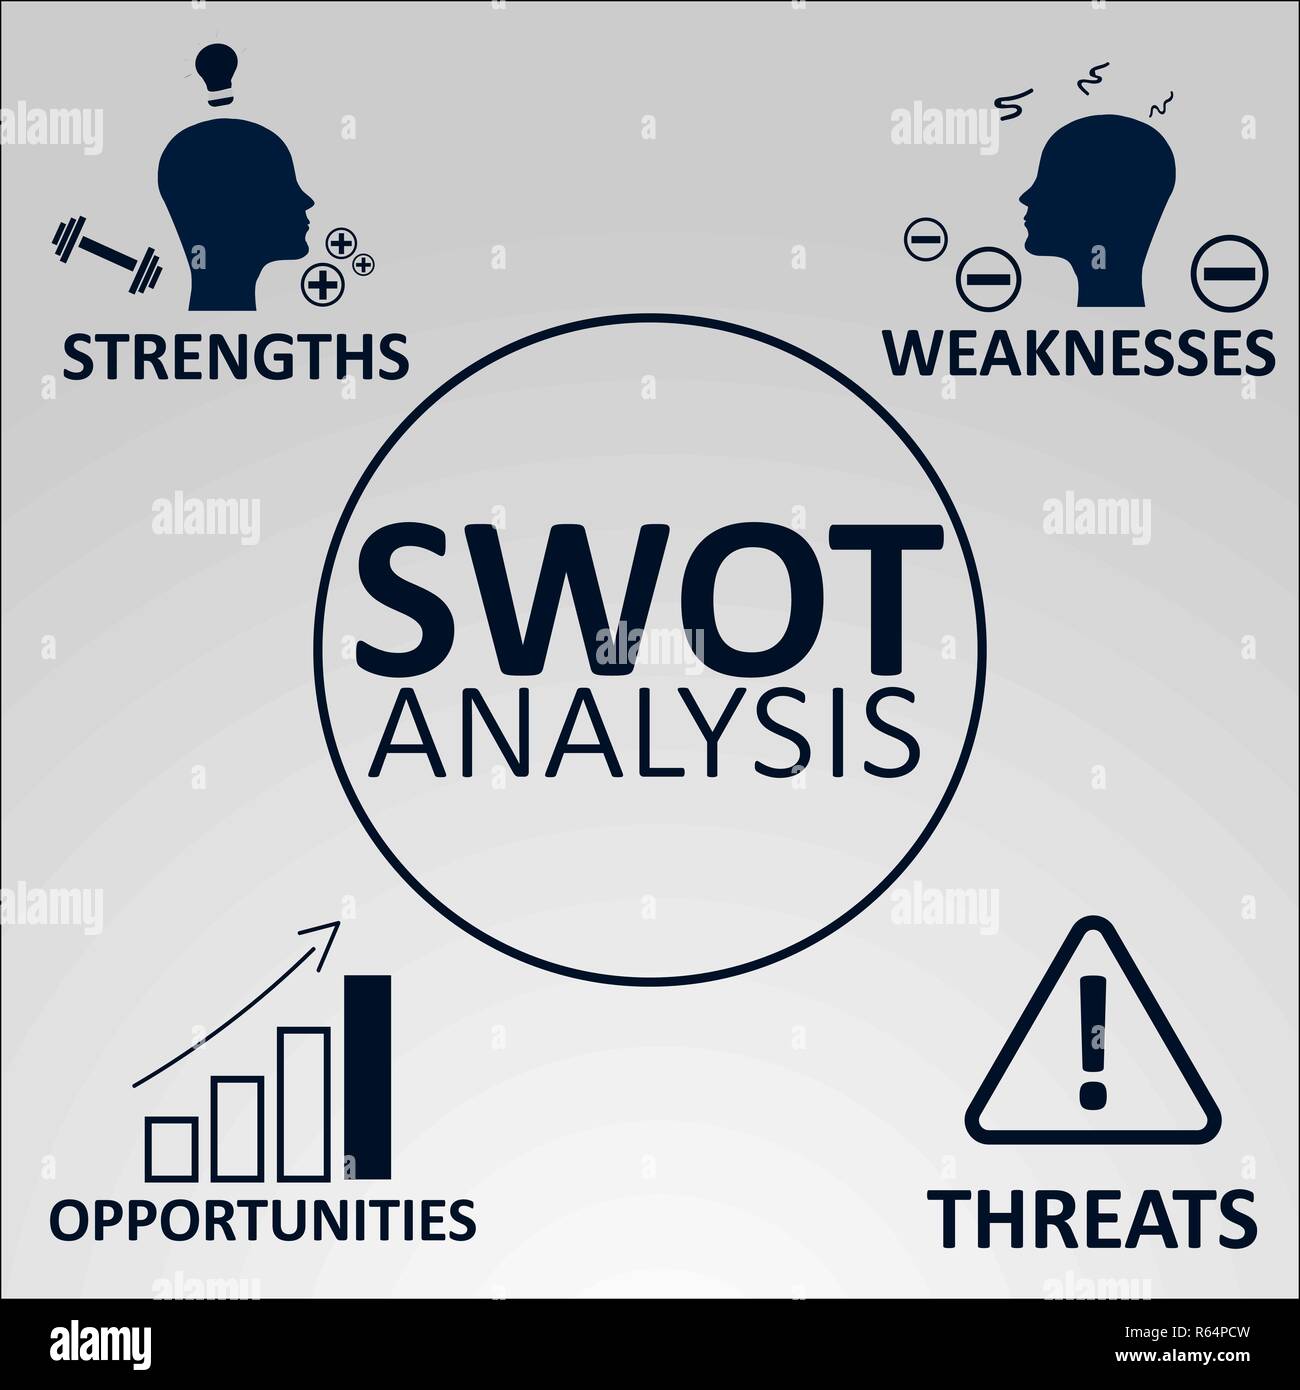 SWOT-Analyse Konzept. Stärken, Schwächen, Chancen und Risiken des Unternehmens. Vector Illustration mit Symbolen und Text. Stock Vektor